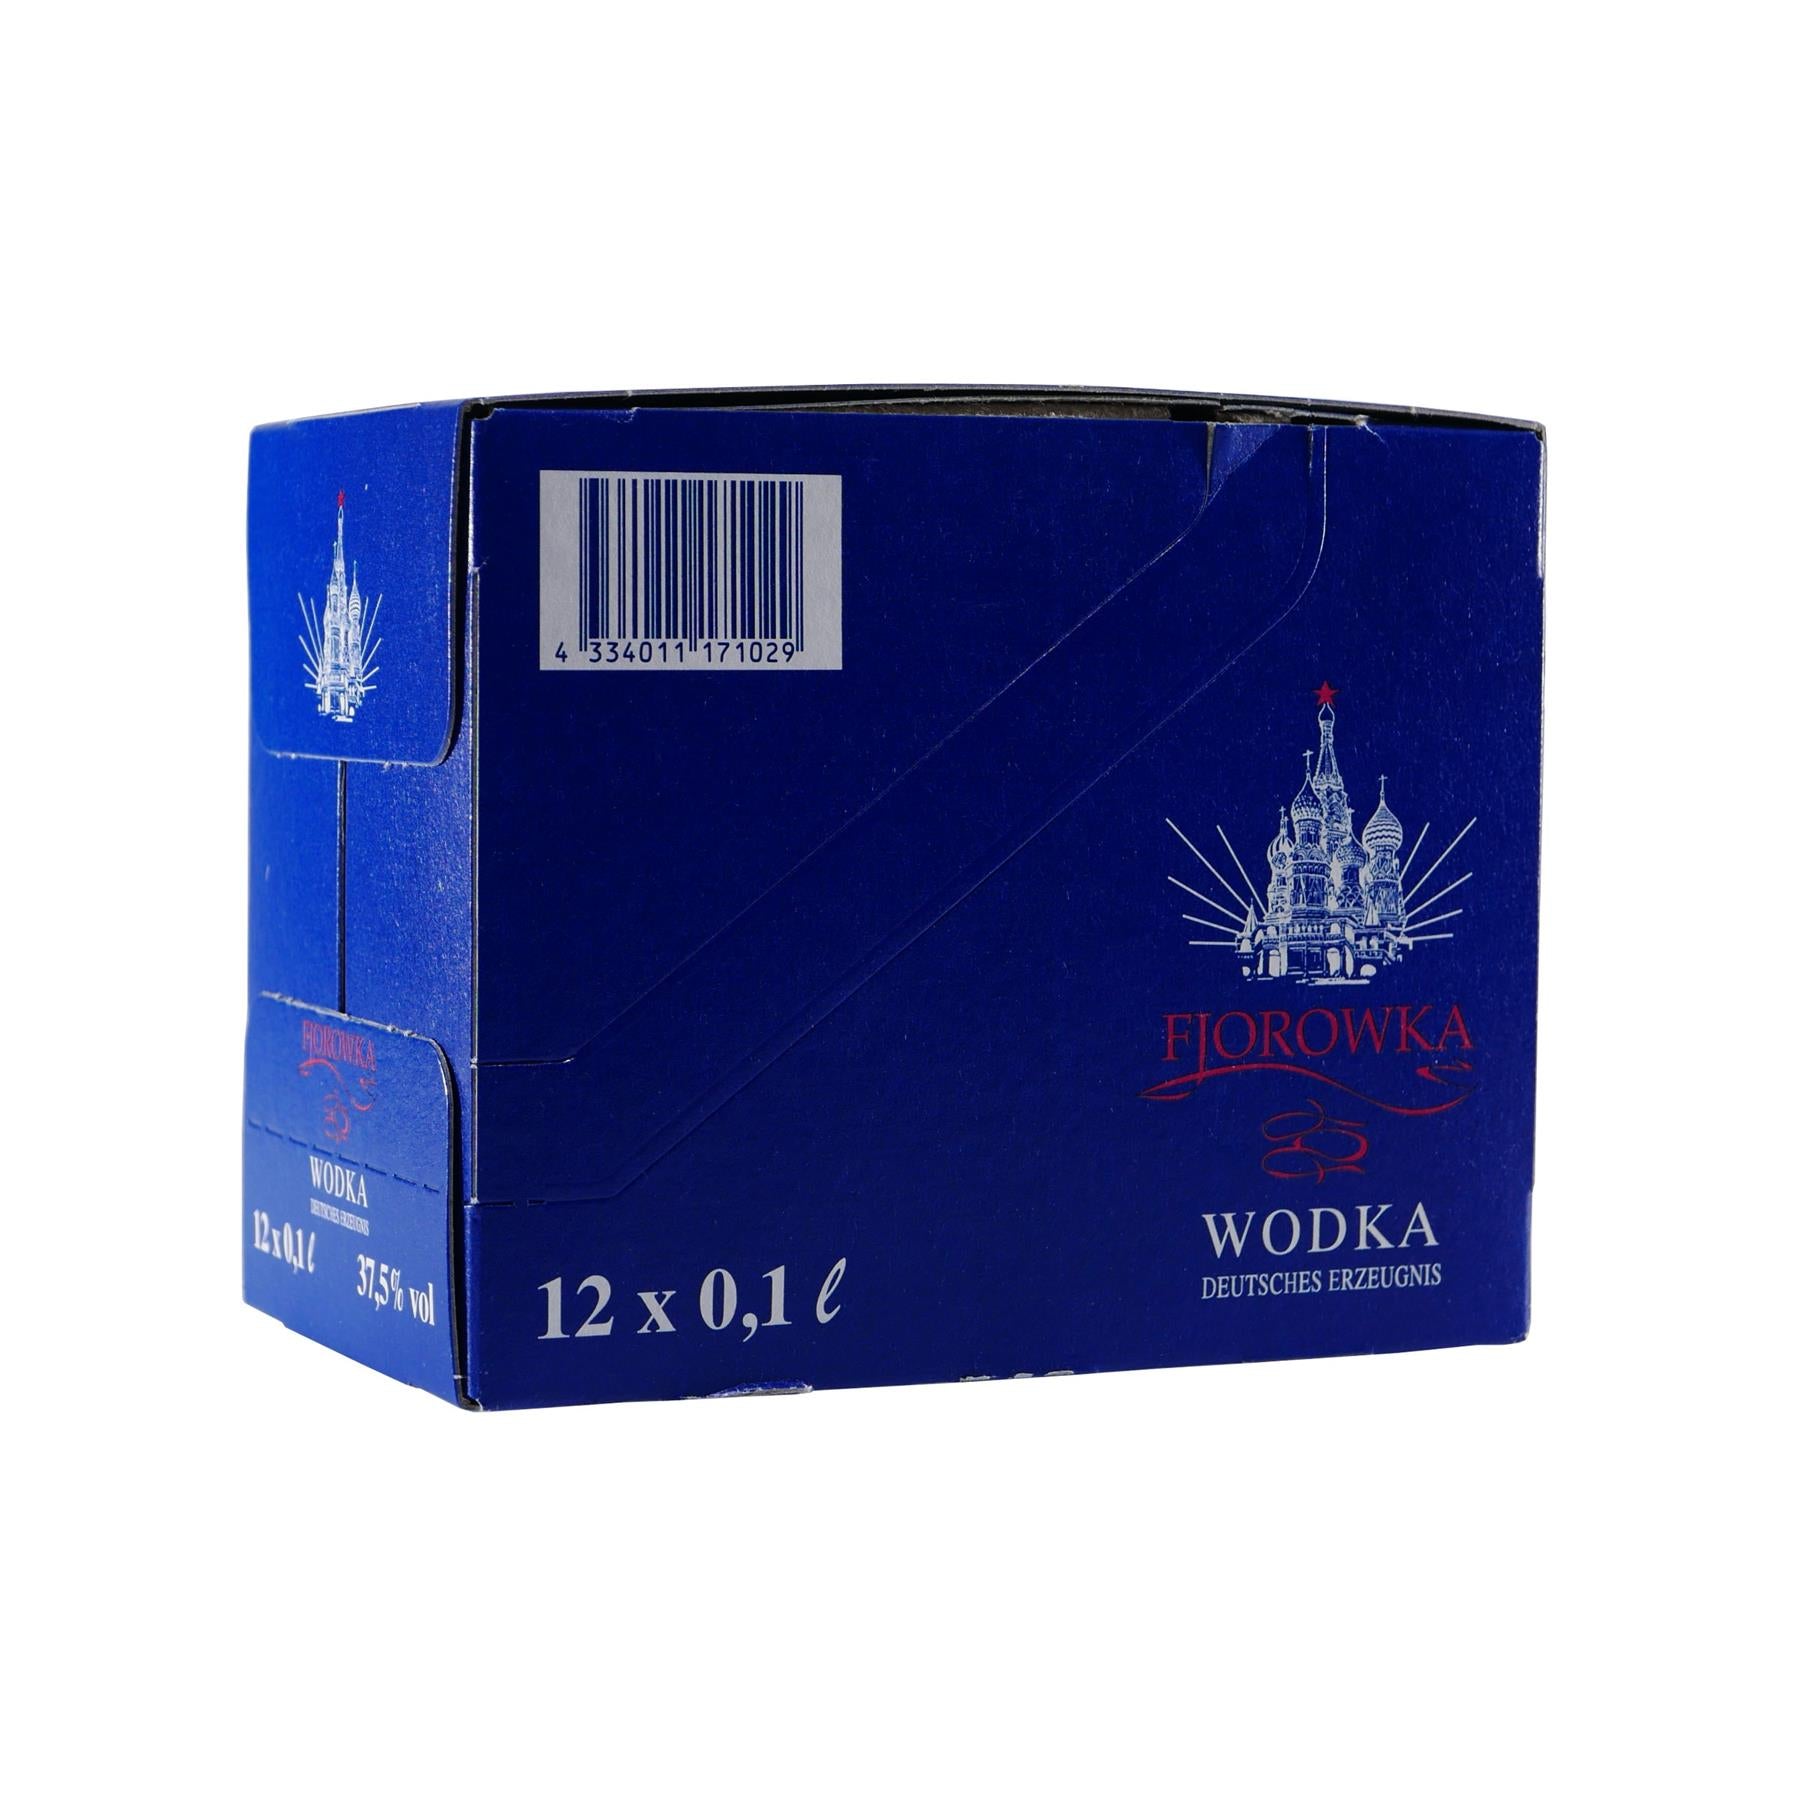 Fjorowka Wodka (12 x 0,1L)